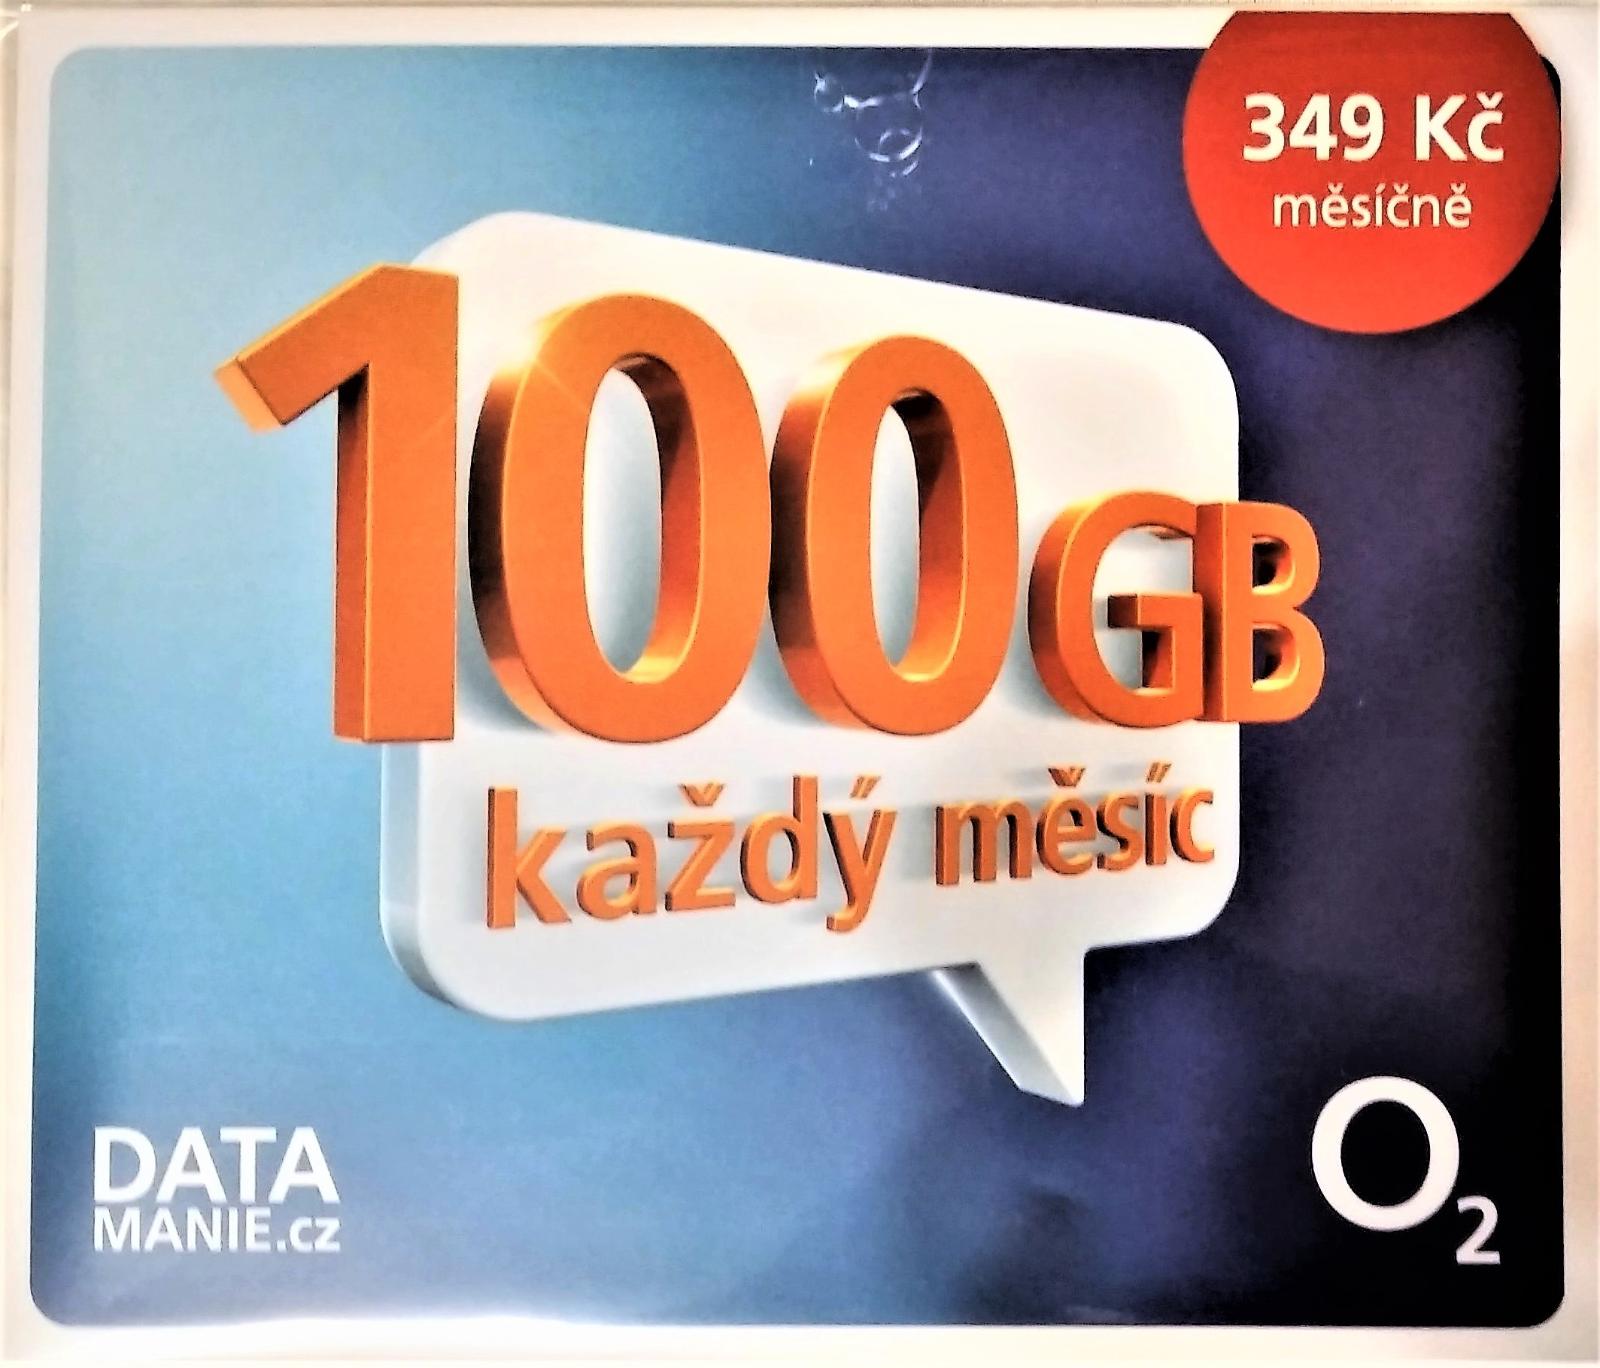 DATAMANIE O2 SIM KARTA 100 GB ZA 13,99 Kč MESAČNE - Mobily a smart elektronika